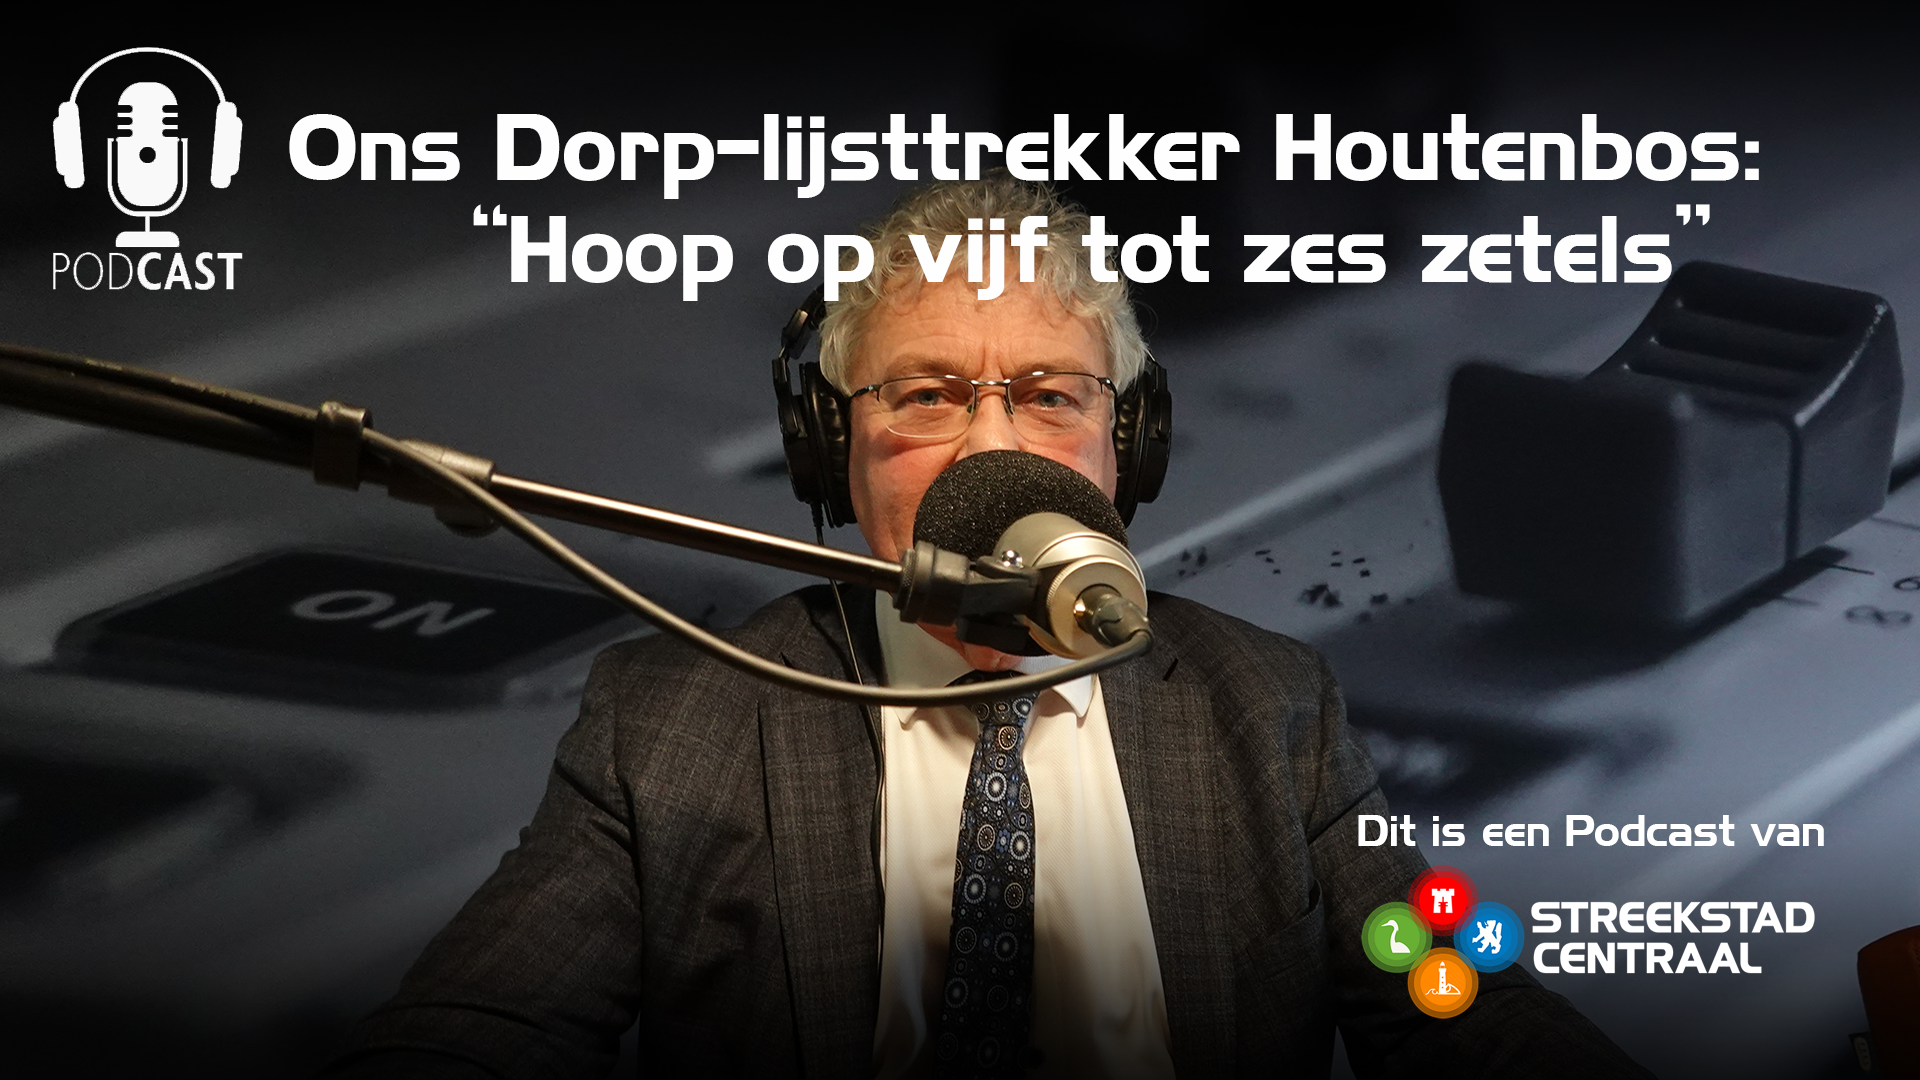 Jan Houtenbos op campagne met nieuwe Bergense lokale partij Ons Dorp